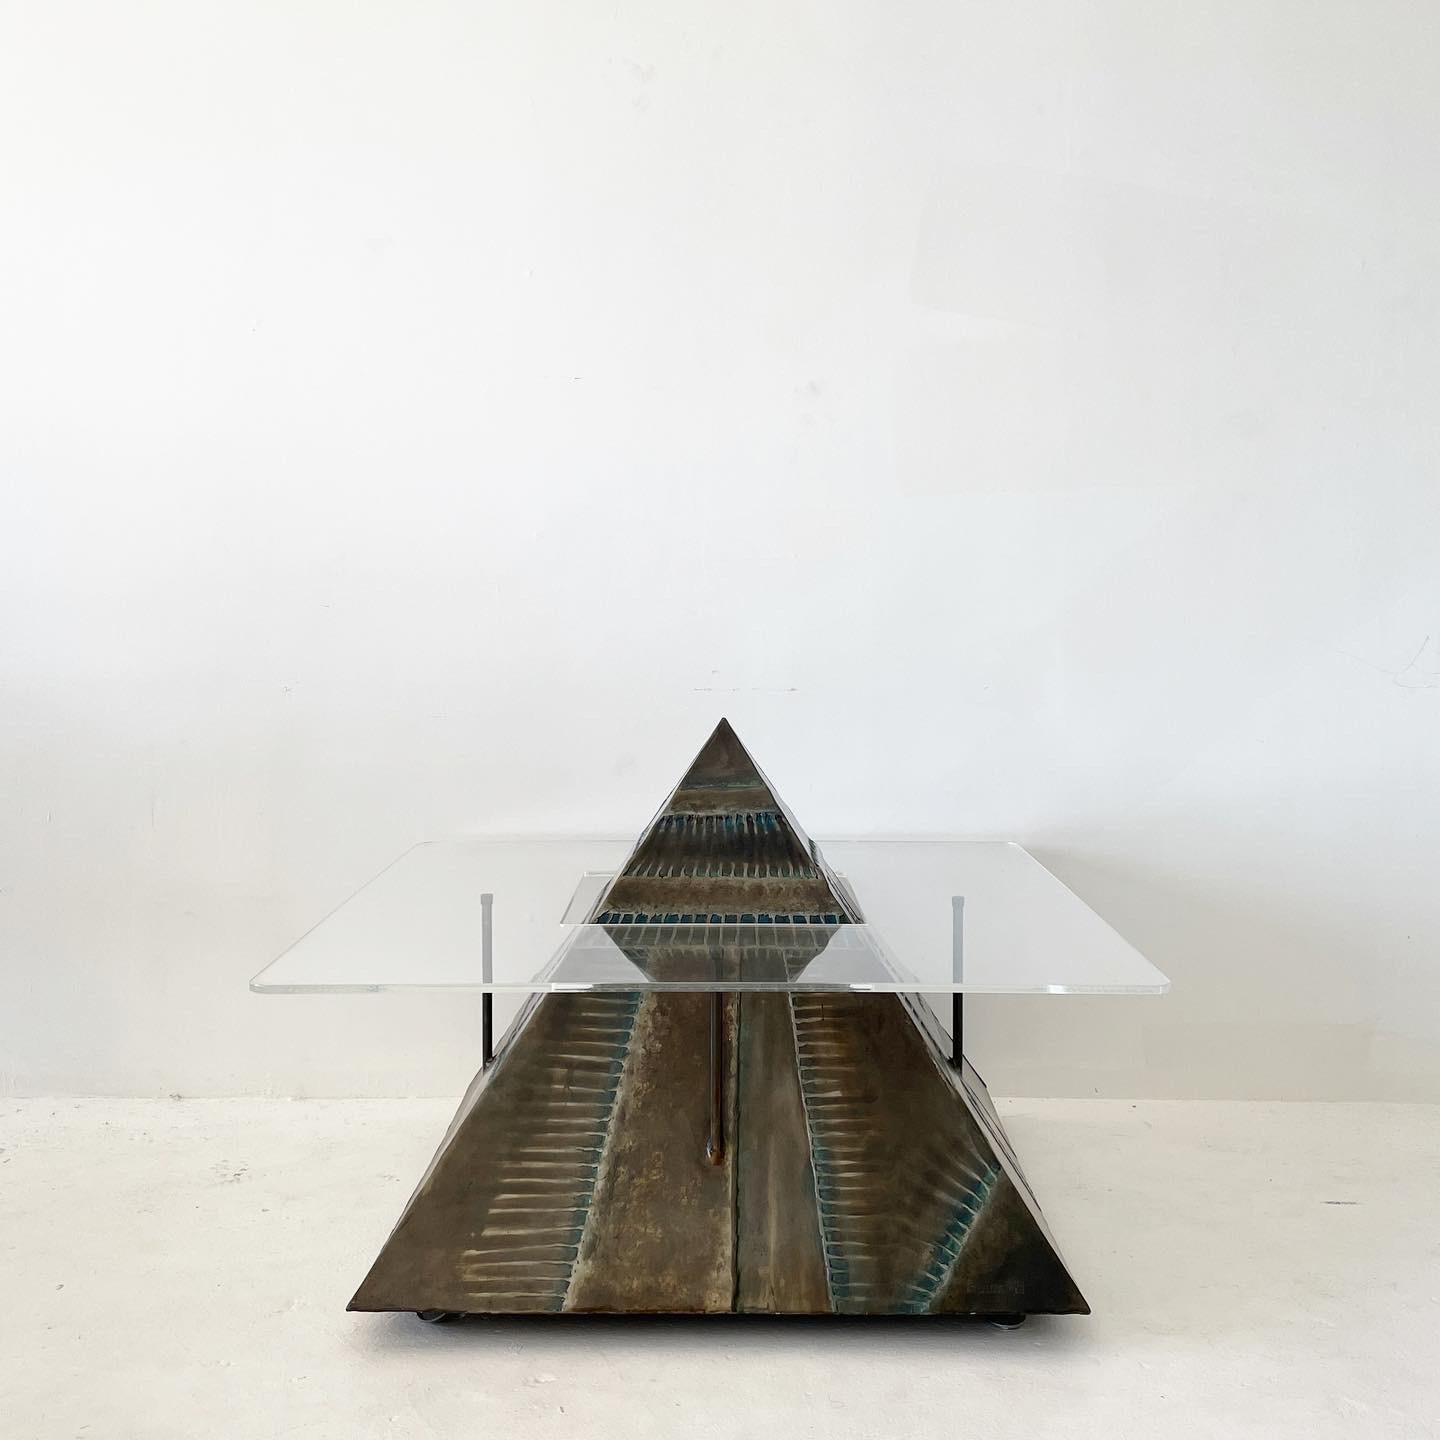 Einzigartiger, schwebender Pyramiden-Couchtisch aus geschweißtem Metall, hergestellt von einem lokalen Künstler aus LA. Die Oberfläche der Skulptur ist strukturiert und hat ein brüniertes Bronze-Finish mit einigen türkisen Untertönen.

Wrap around